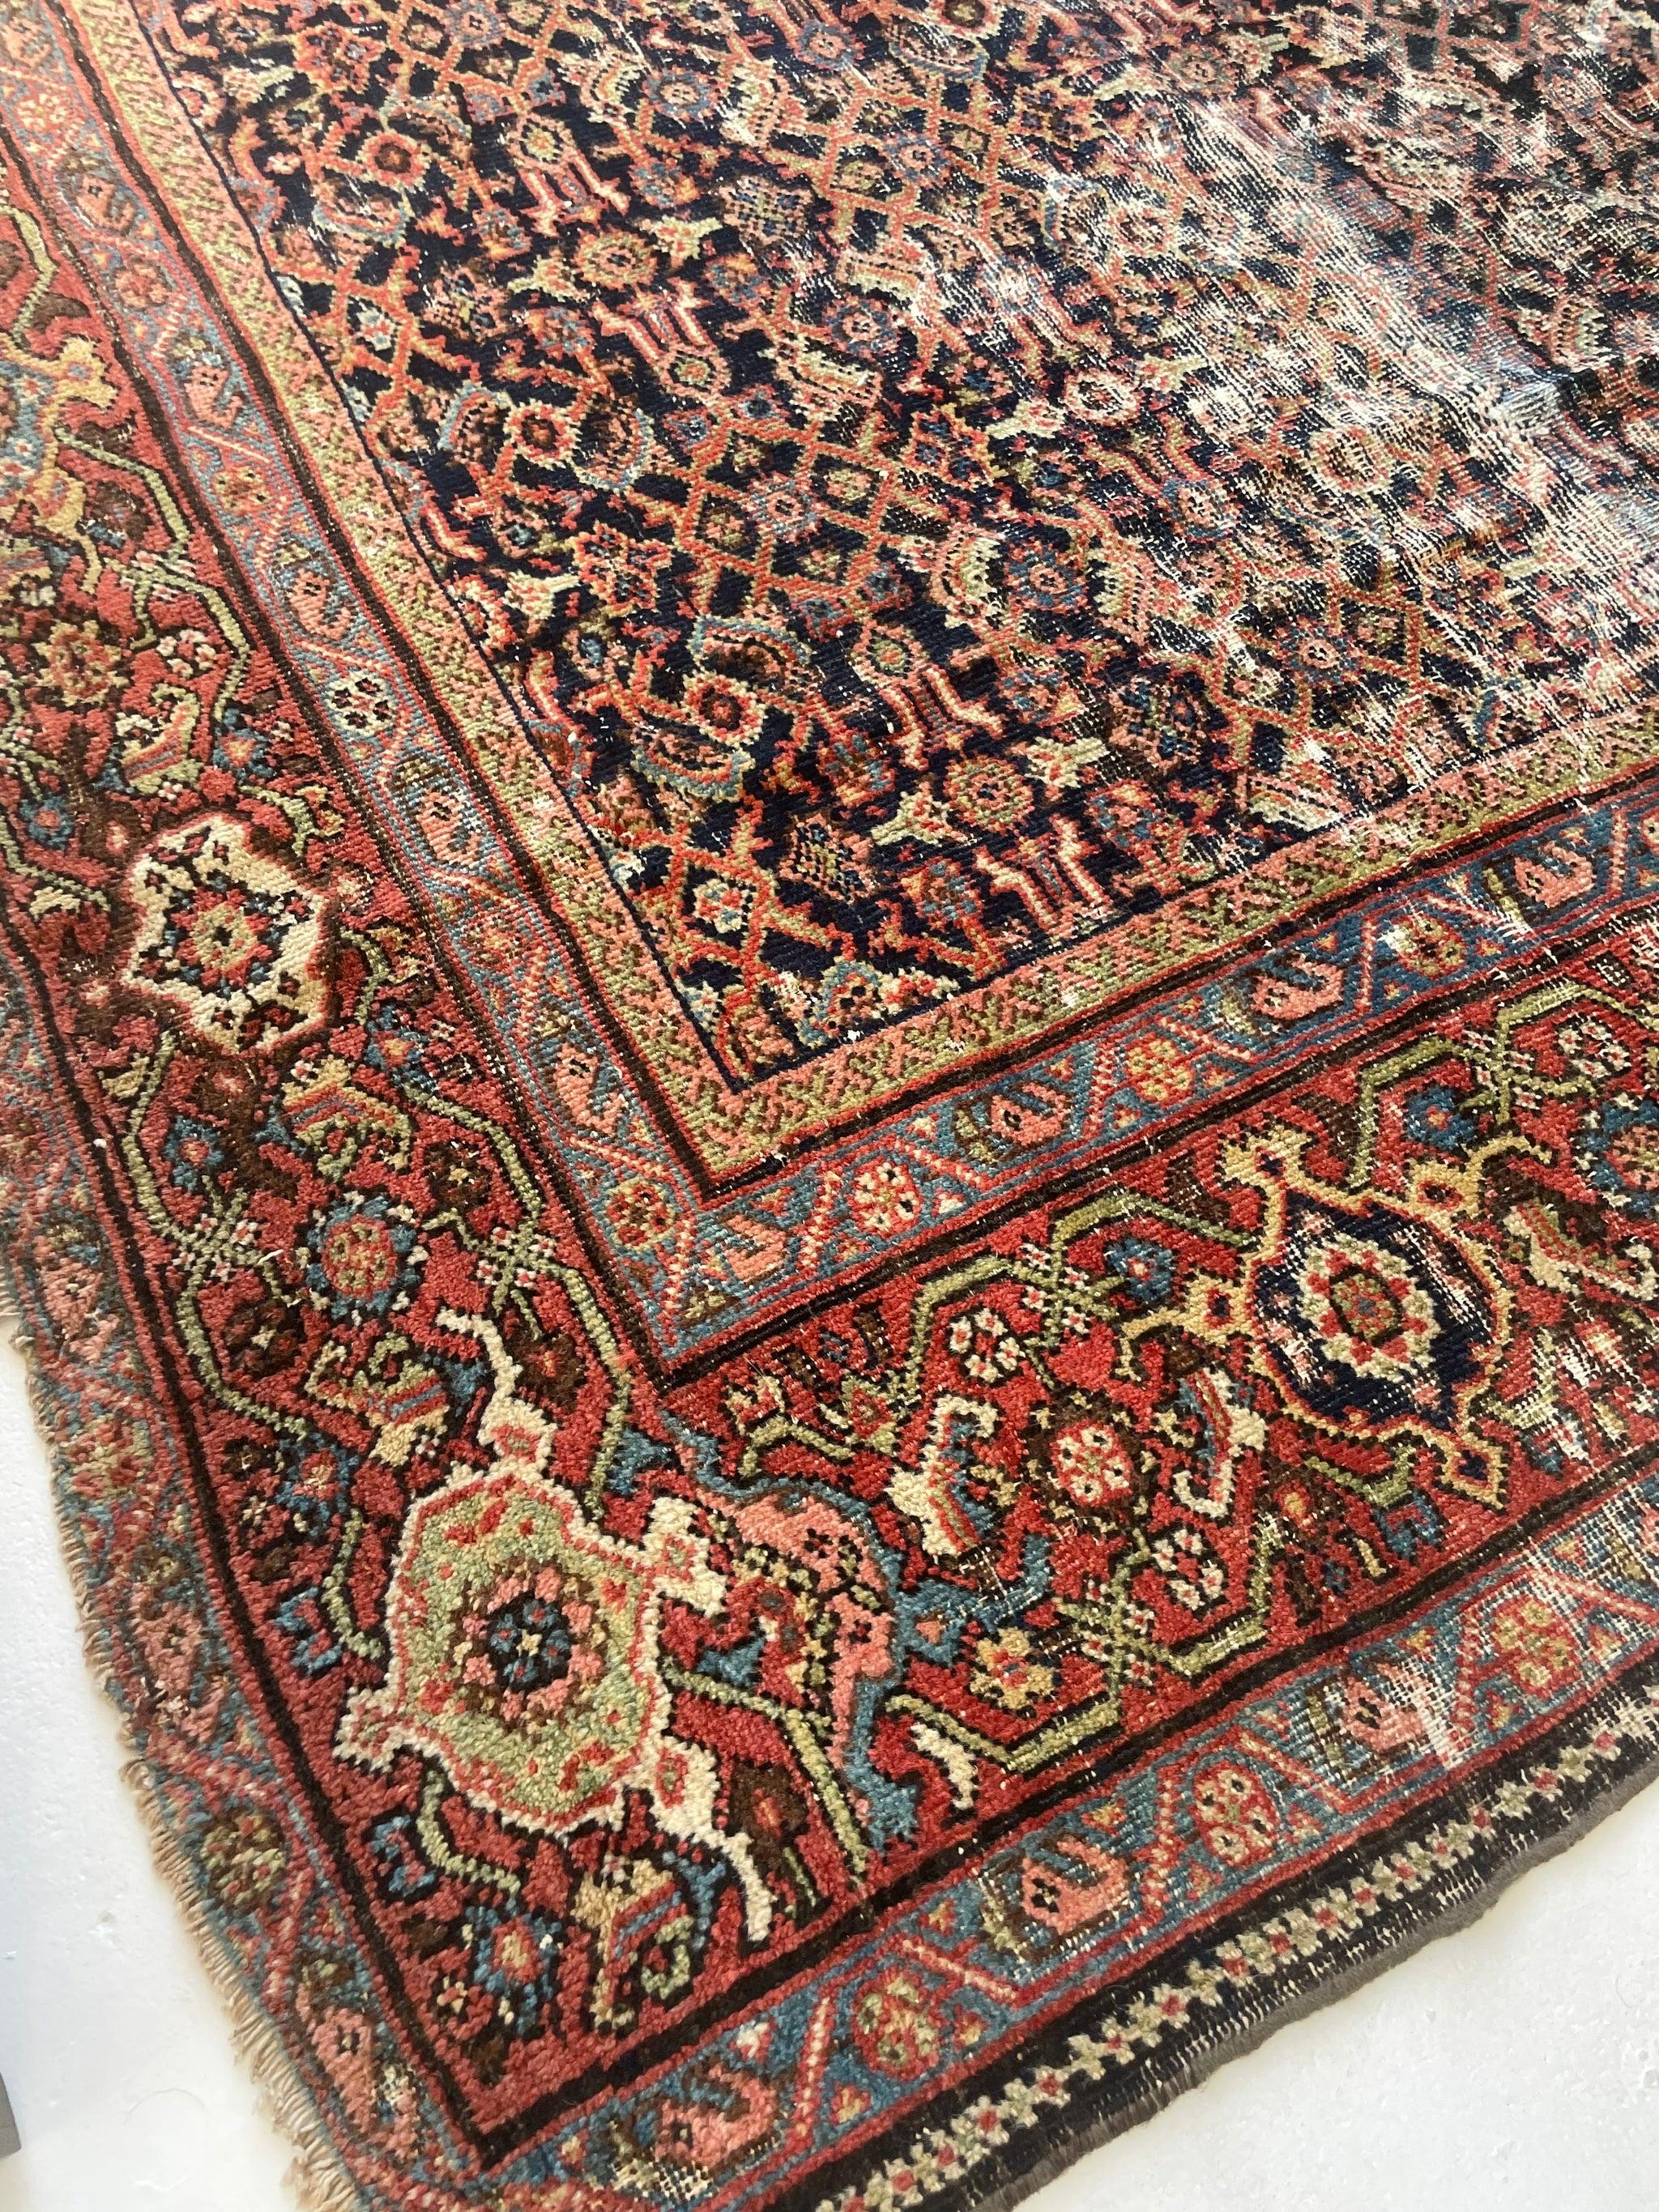 Antique Persian Carpet Rug in Deep Old-World Indigo, circa 1900-1915's For Sale 12